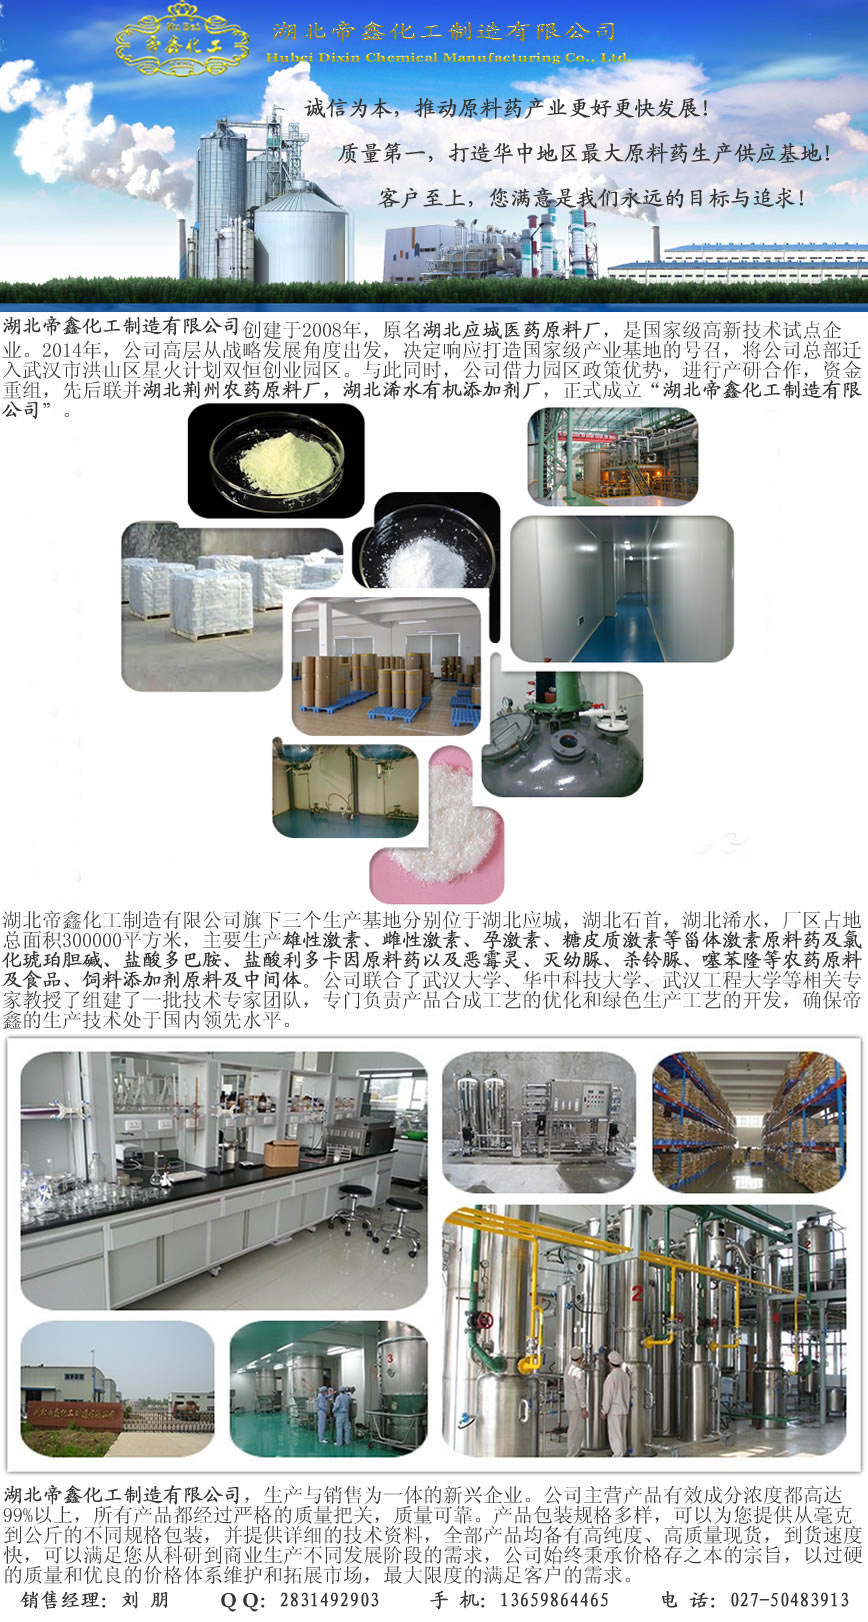 二苯并呋喃原料生产厂家 长江流域最大原料药生产基地 集散中心 仓储中心